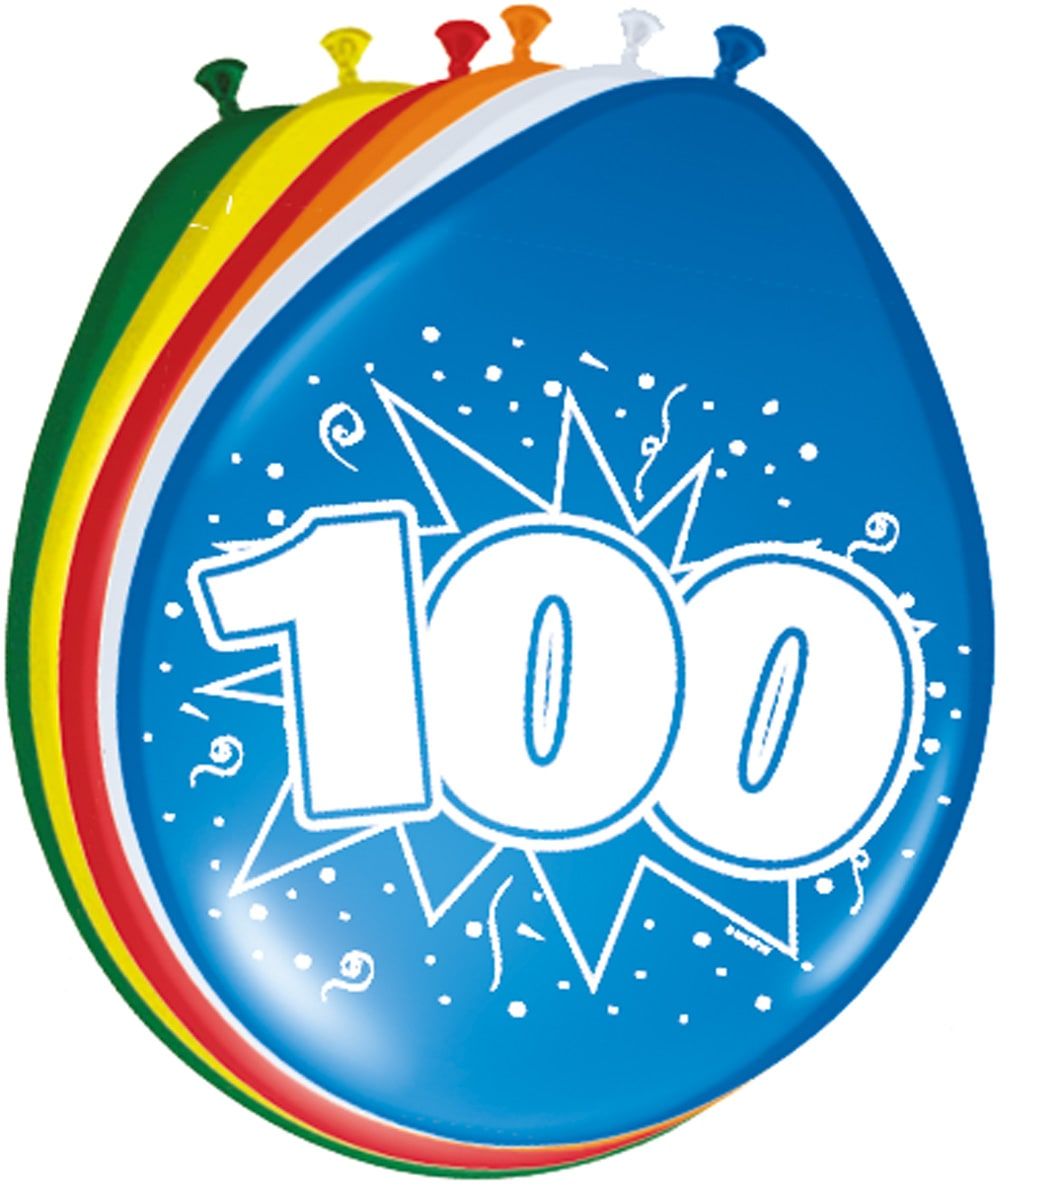 Verjaardag 100 jaar ballonnen 8 stuks